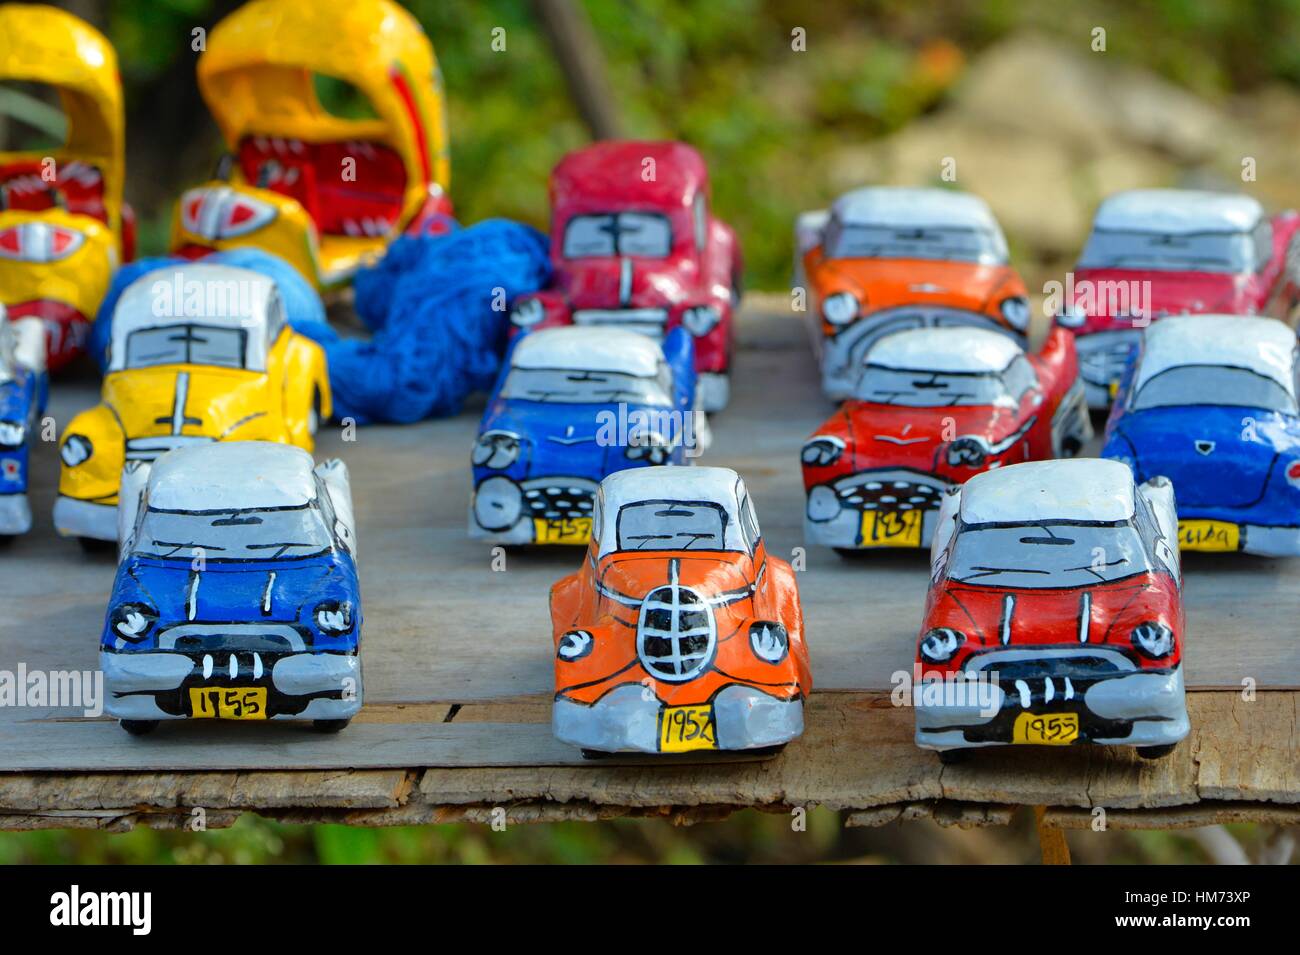 Souvenirs de voitures vintage miniature, à Cuba. Banque D'Images